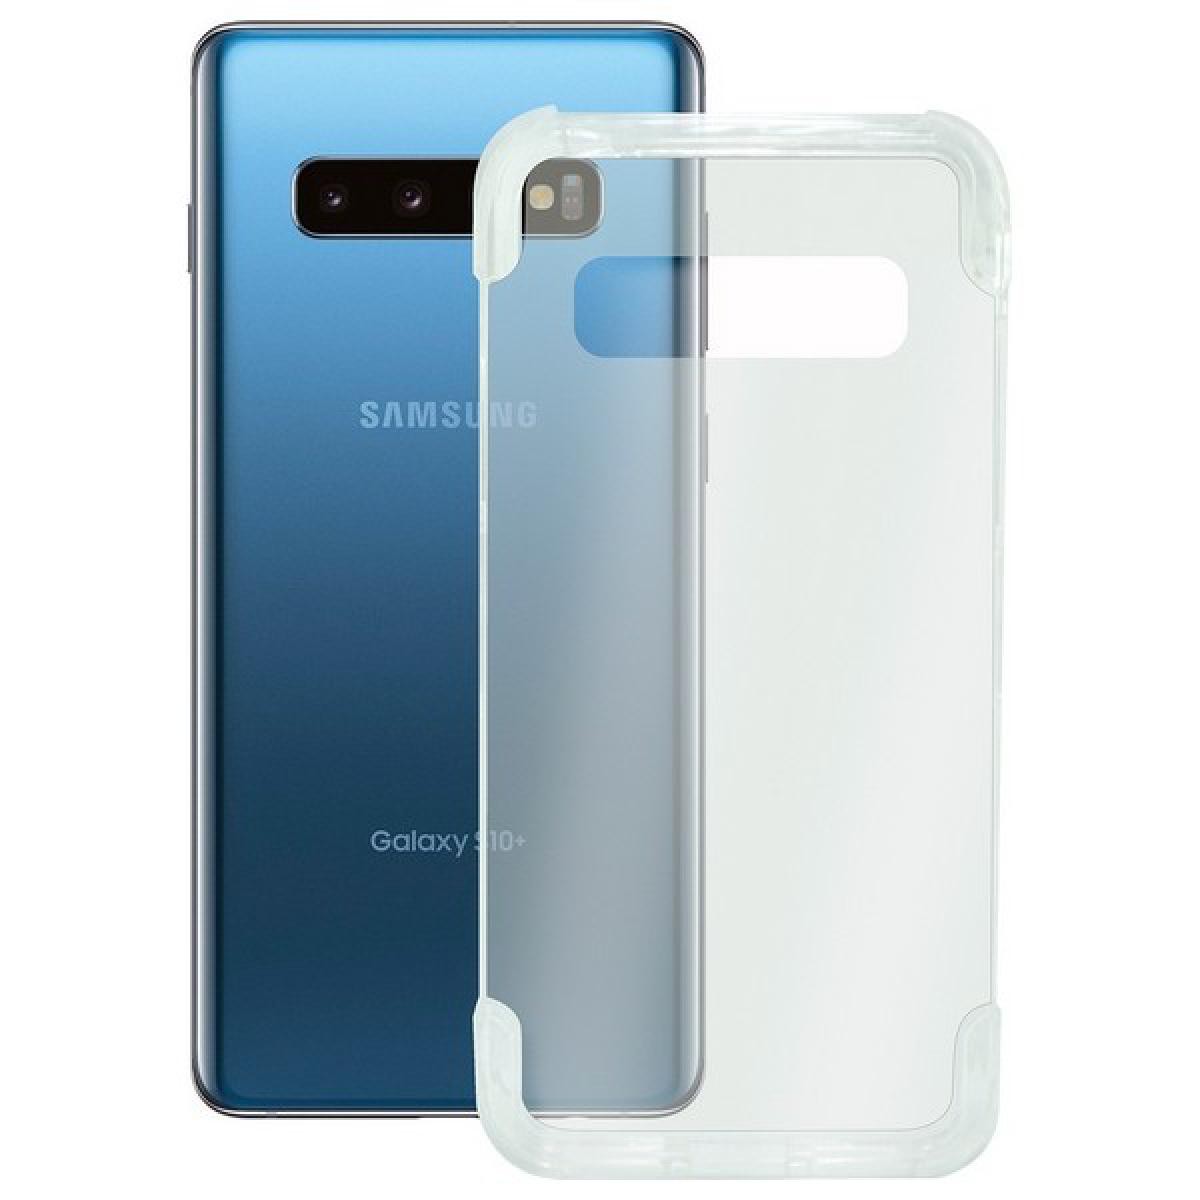 Totalcadeau - Coque de protection compatible Galaxy S10+ Armor Extreme Transparent Pas cher - Coque, étui smartphone